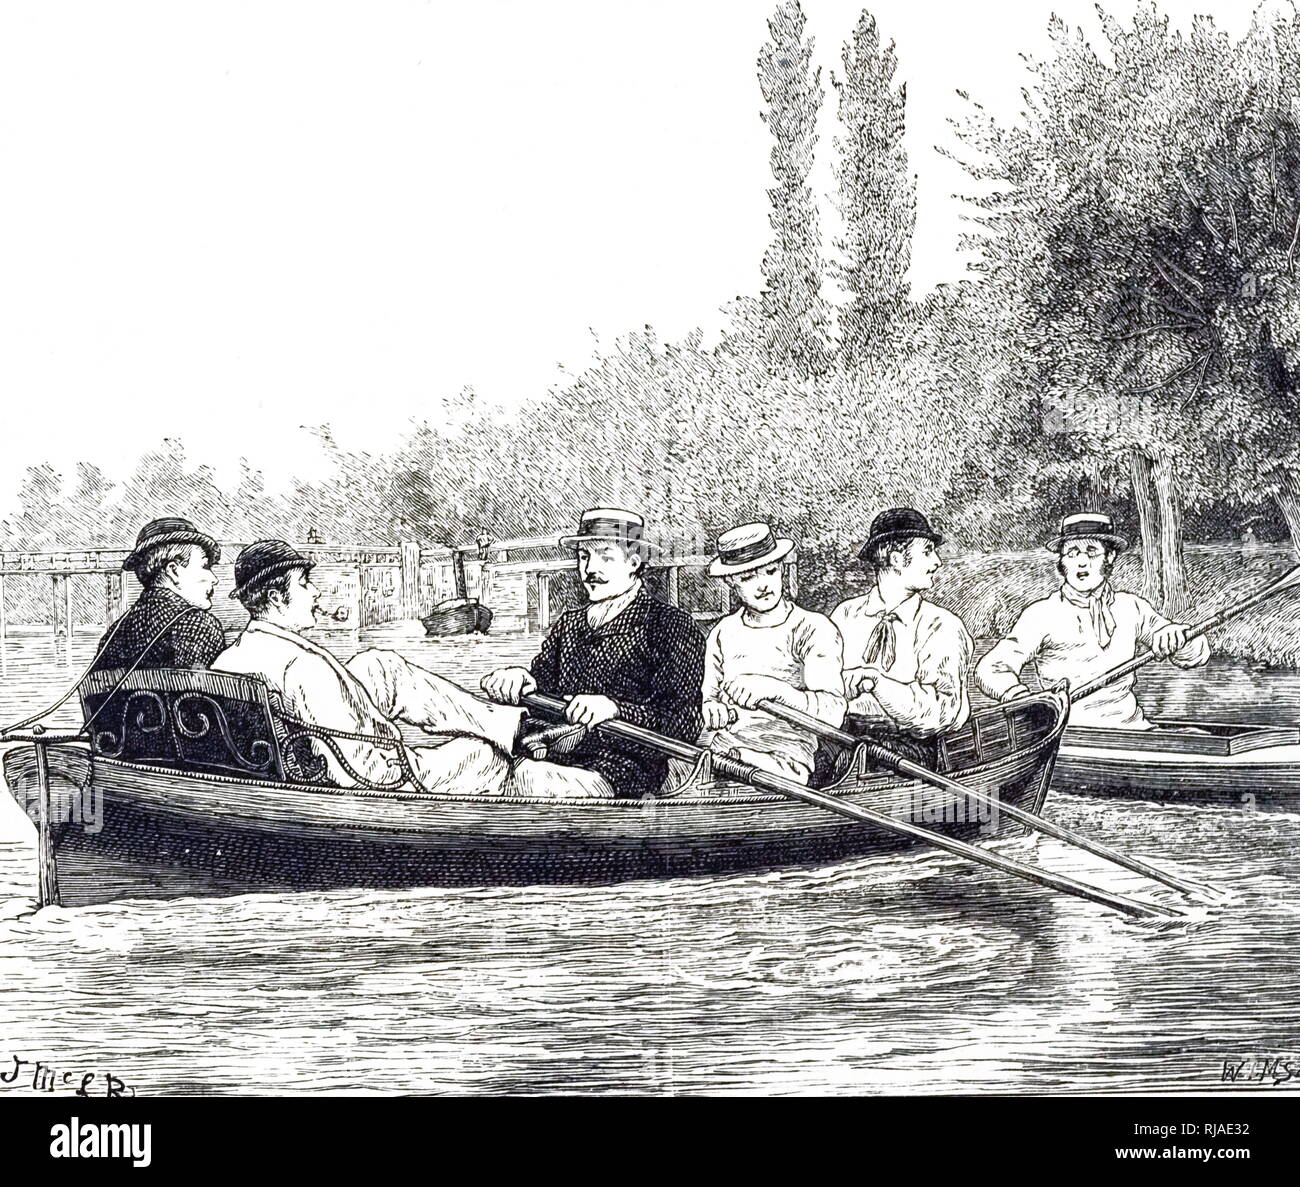 Illustration montrant les étudiants d'Oxford, dans la pratique, pour la course de bateau, 1879. La Boat Race est une course d'Aviron annuelle entre l'Université d'Oxford et le Club de bateau de Cambridge University Boat Club, ramé entre hommes et femmes, ouvrez-eights poids sur la Tamise à Londres, en Angleterre. Il est également connu sous le nom de University Boat Race et de l'Oxford et Cambridge Boat Race. La course des hommes a été tenue pour la première fois en 1829 et a lieu chaque année depuis 1856, sauf pendant la première et la seconde guerre mondiale. Banque D'Images